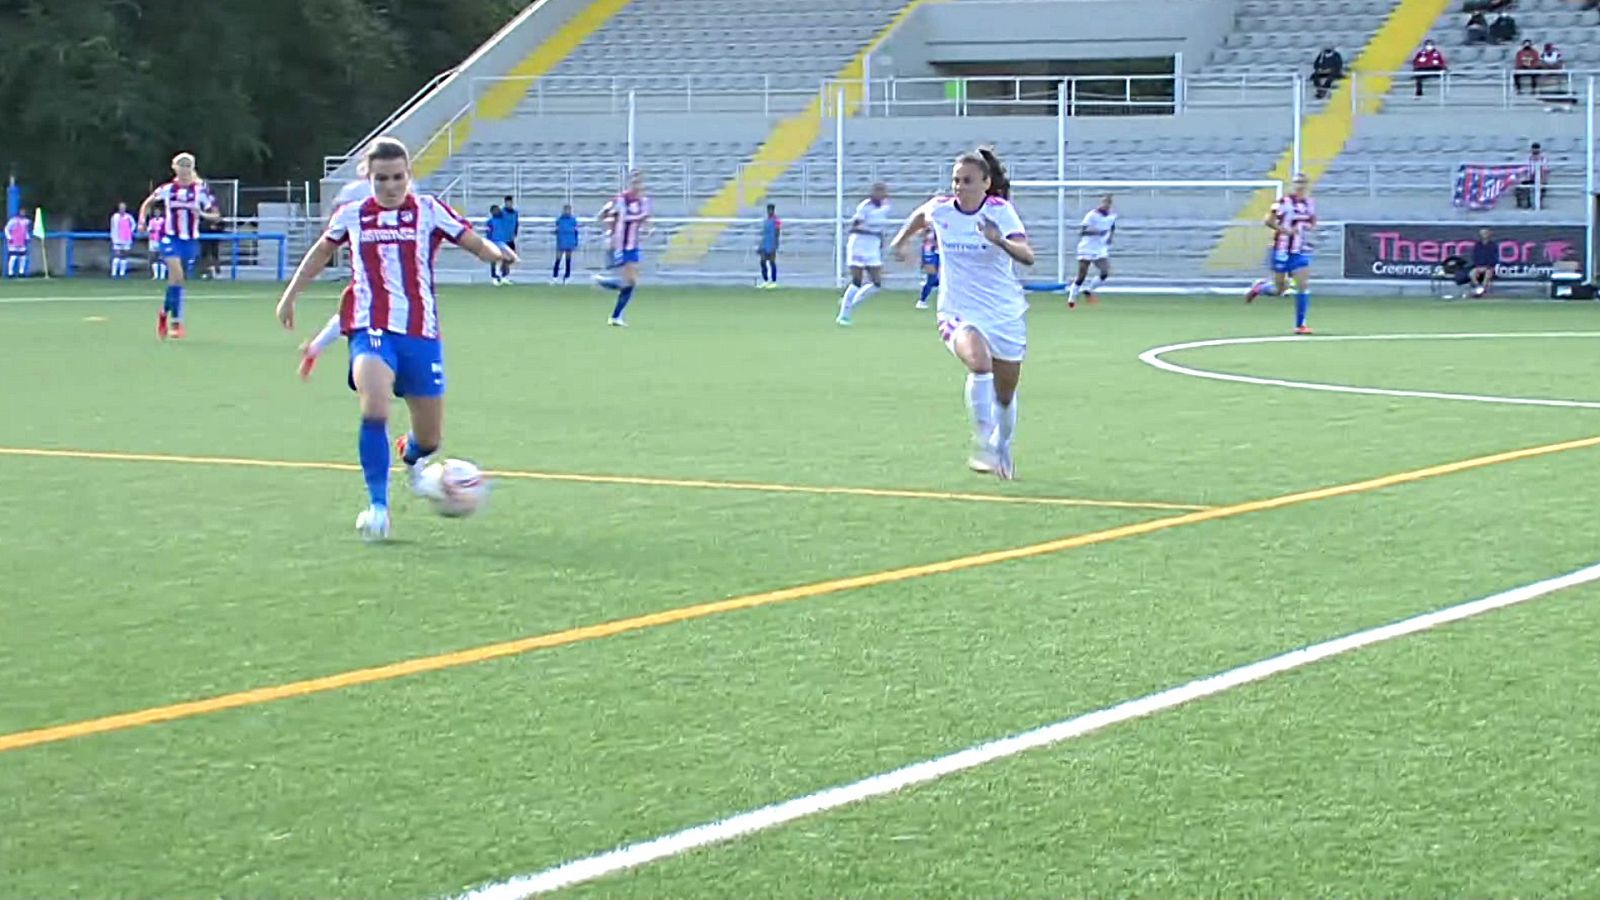 Liga Ibredrola femenina. 5ª jornada : Madrid CFF - At. Madrid